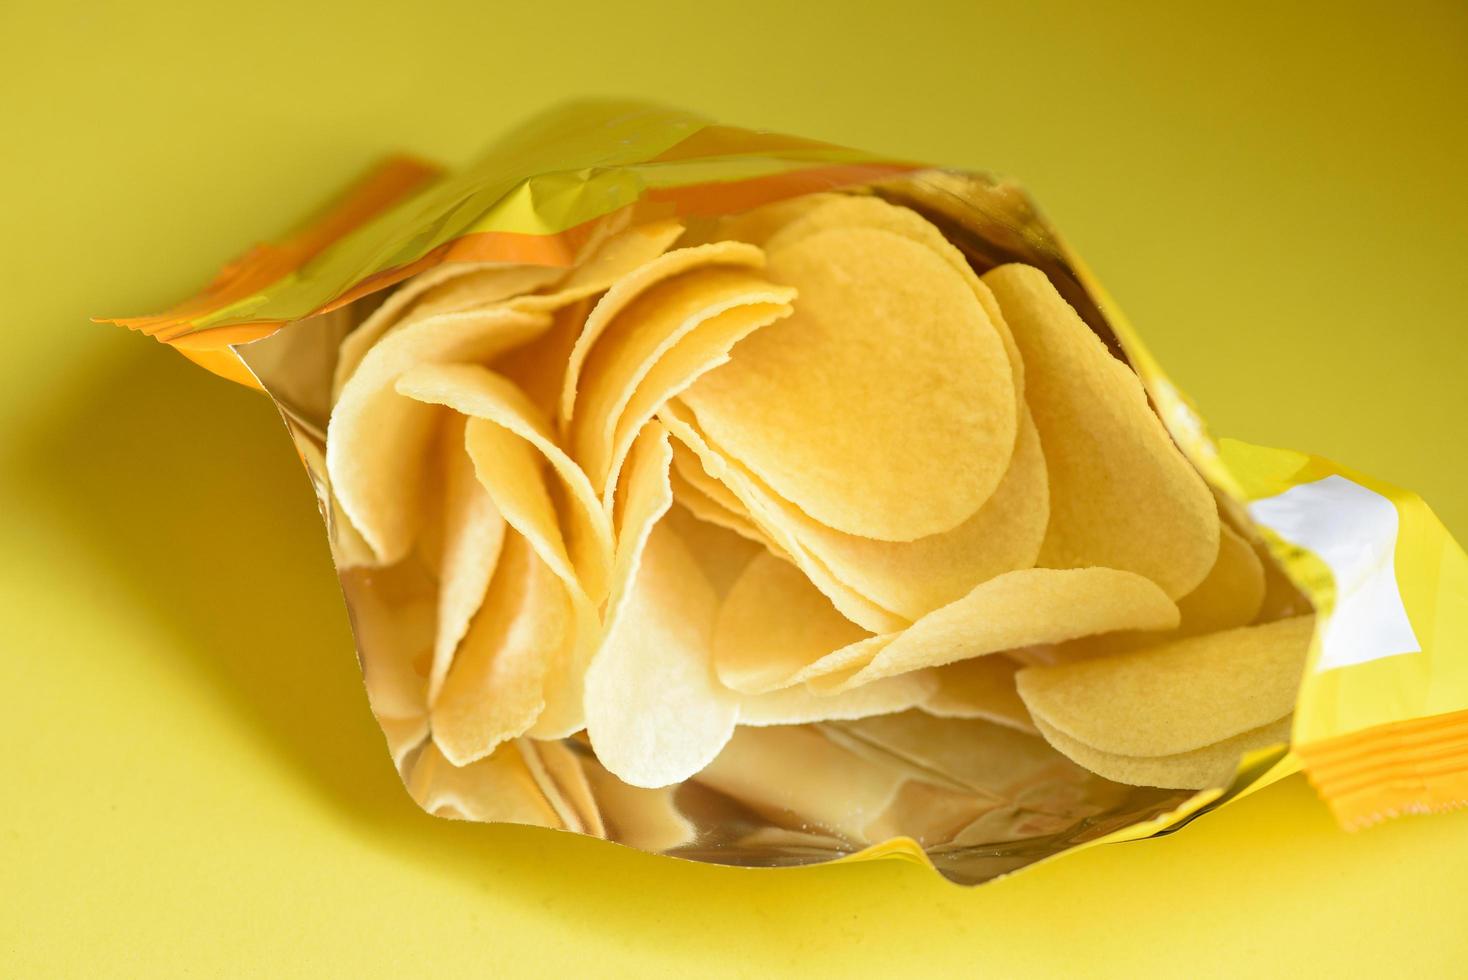 papas fritas de fondo amarillo, papas fritas es un bocadillo en un paquete de bolsas envuelto en plástico listo para comer y comida grasa o comida chatarra foto